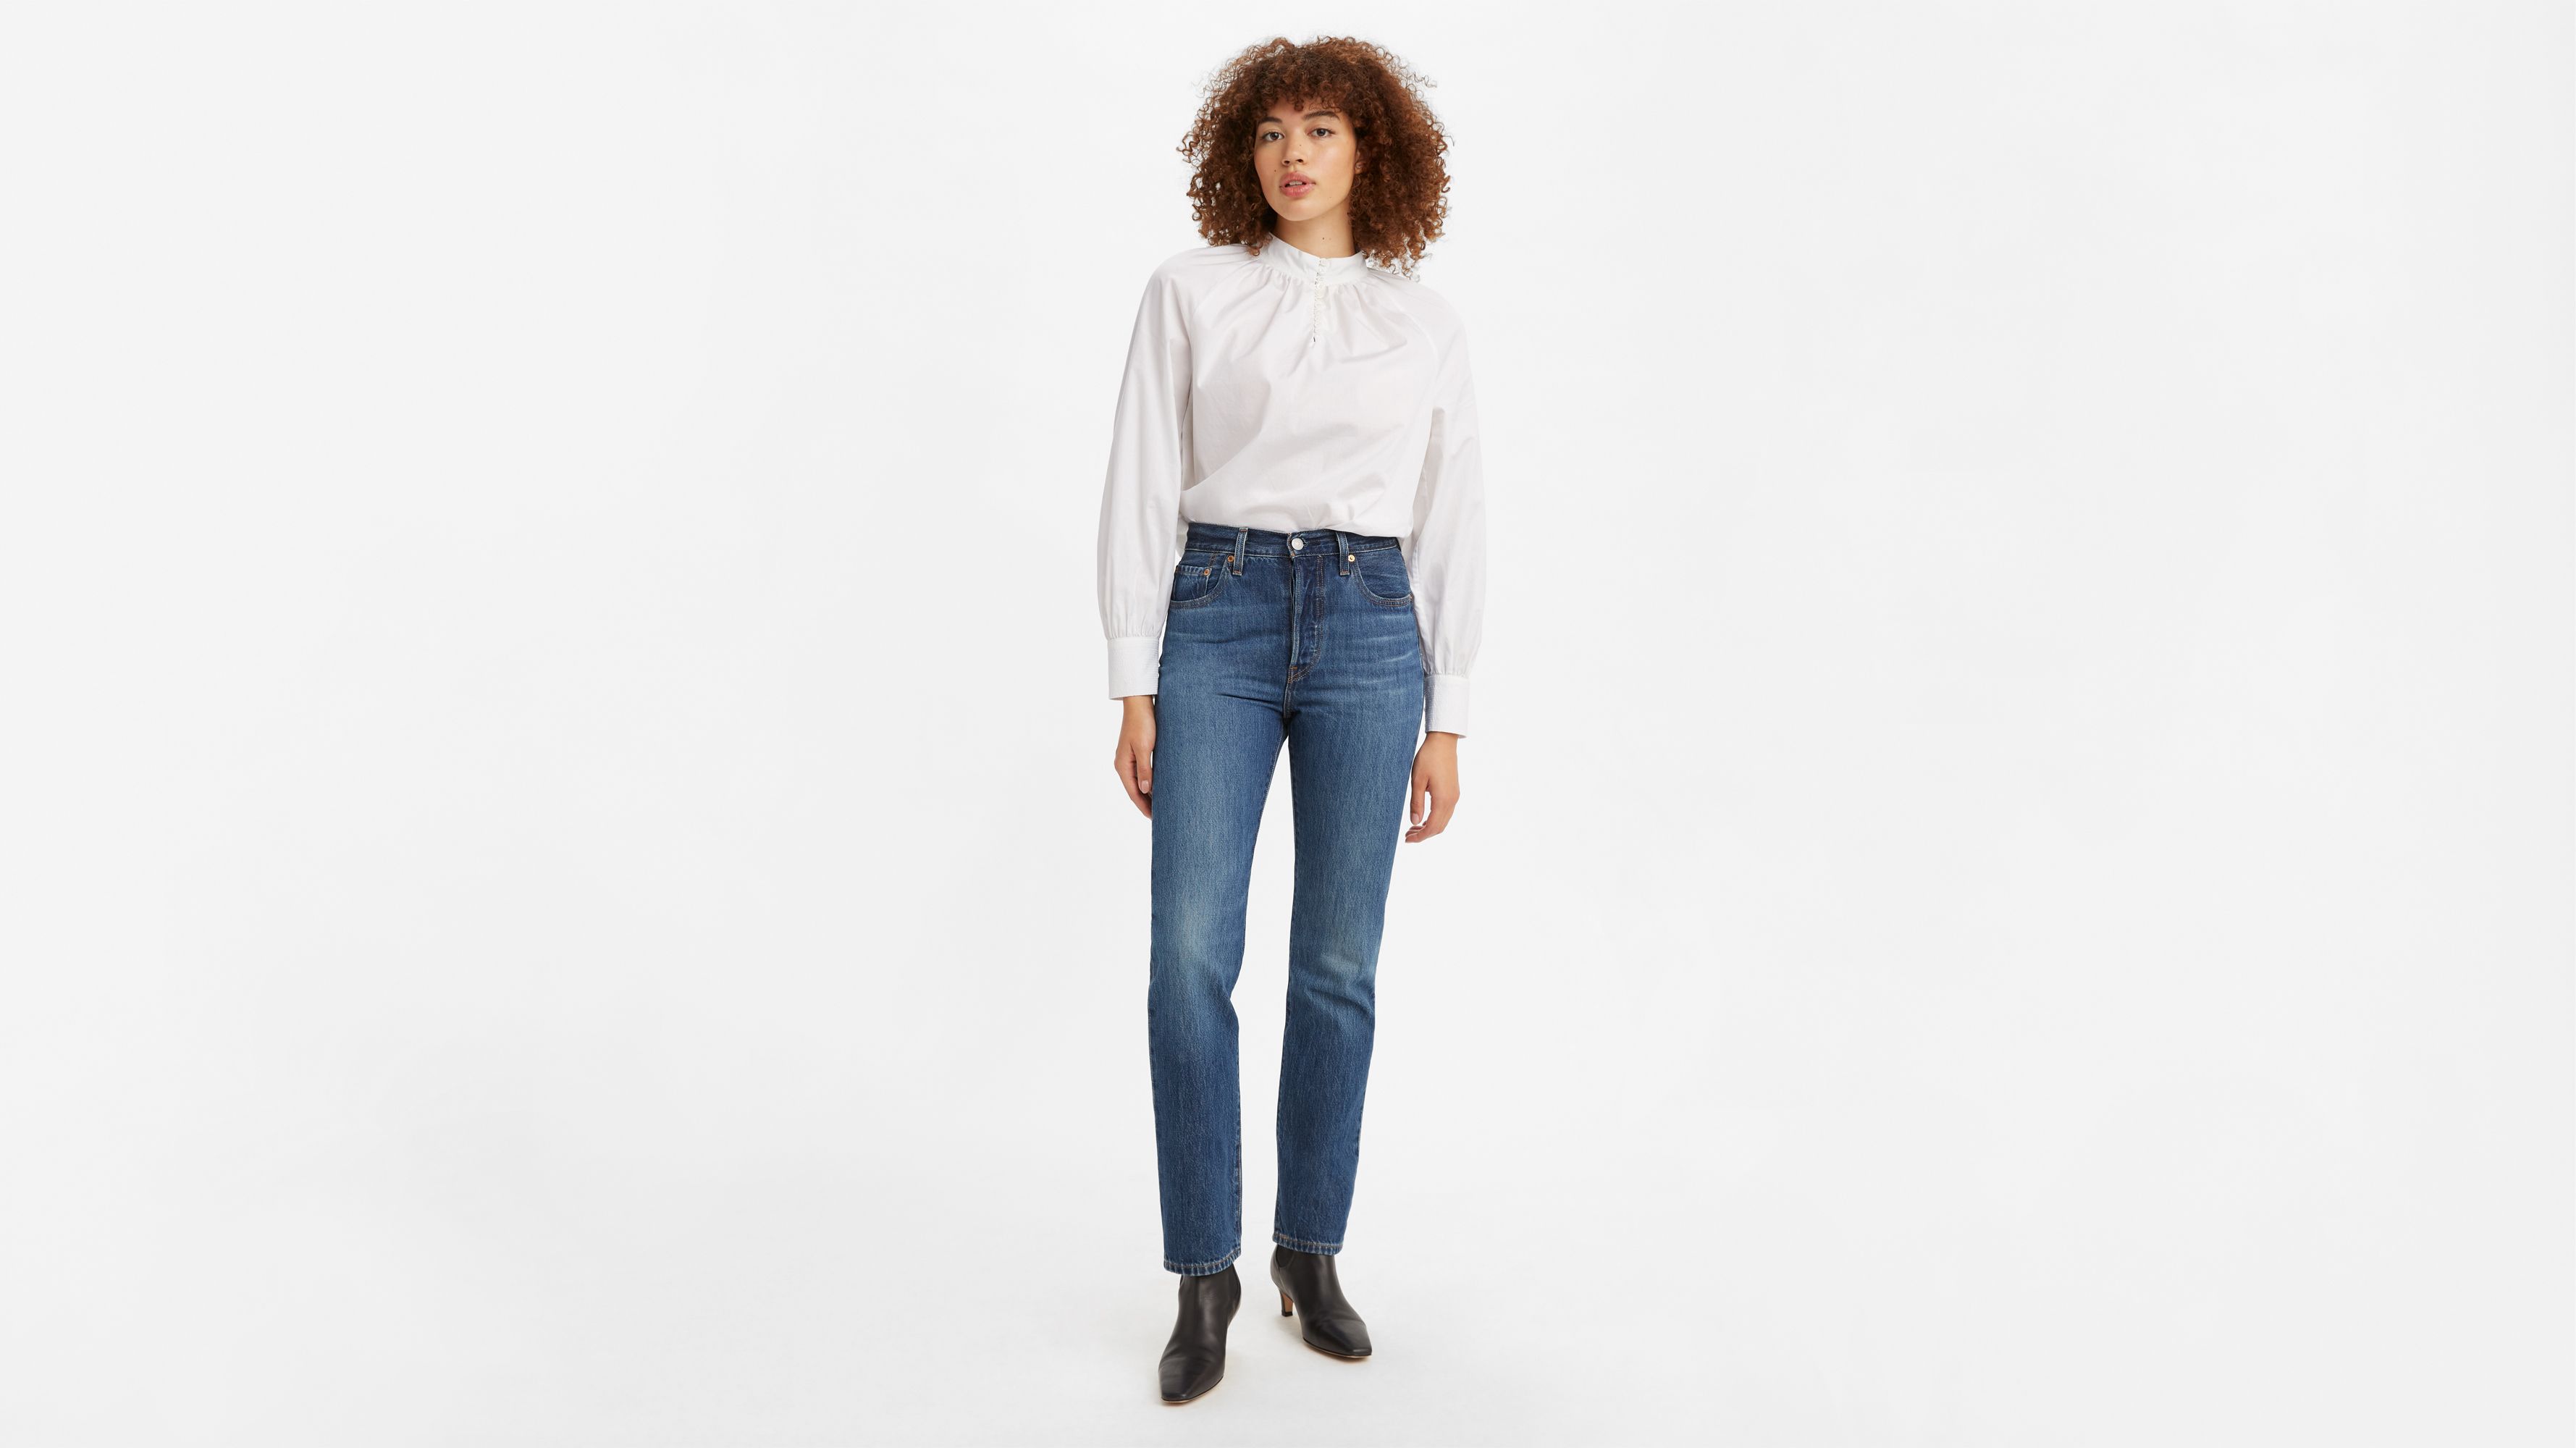 levi's 501 original fit jeans womens